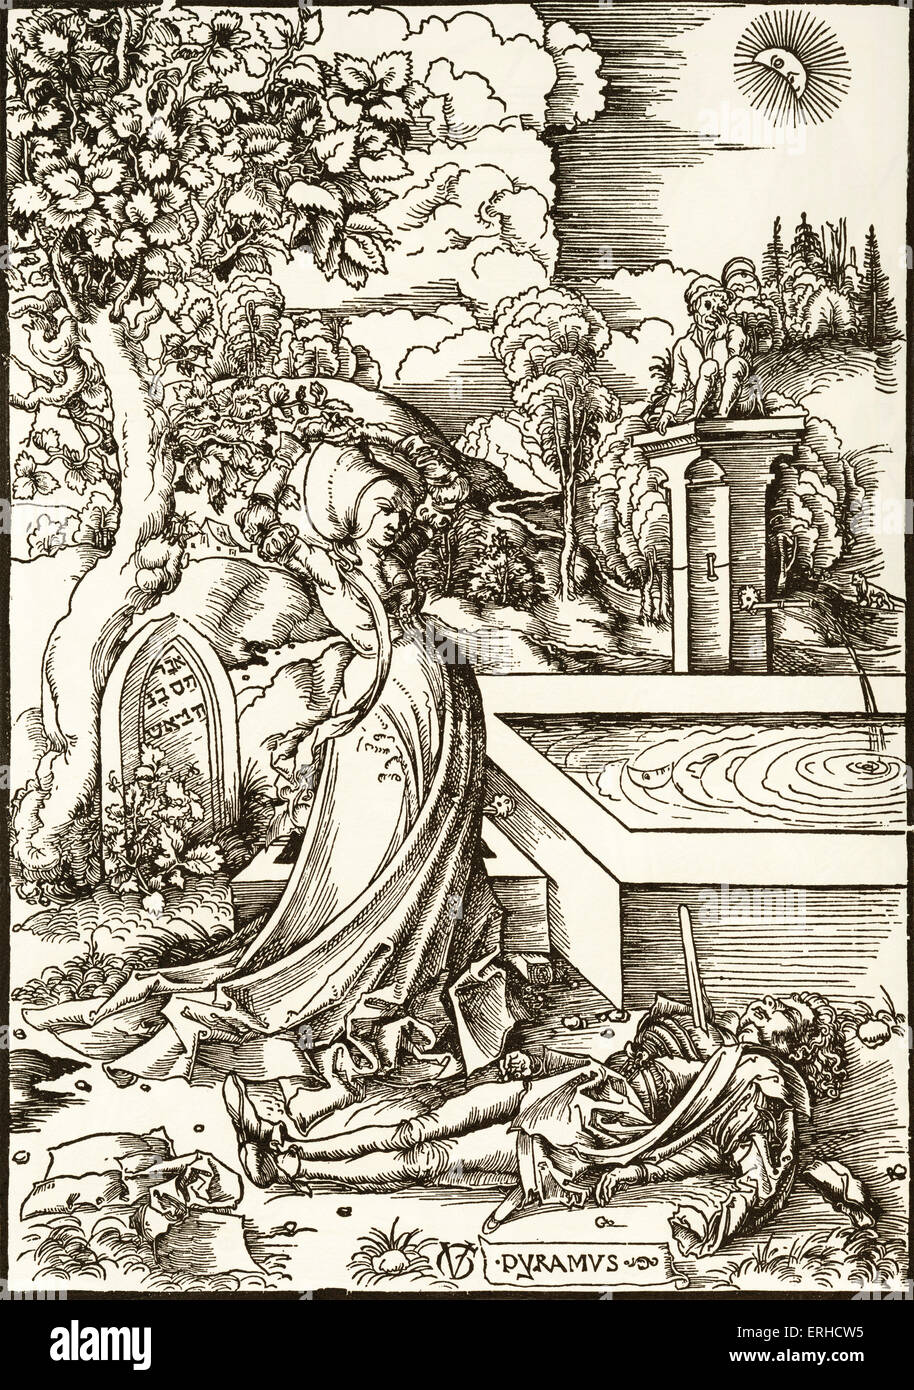 Pyramus und Thisbe, Holzschnitt von Urs Graf c 1506-7. Geschichte von Ovids Metamorphosen. Thisbe steht unter dem Maulbeerbaum, Betrachtung der Figur des Pyramus, auf sein Schwert gefallen ist. In der Ferne auf der rechten Seite ist die Löwin, die Pyramus fälschlicherweise vermutet hatte, Thisbe, die Ursache seiner Trauer zu töten. Hinter Thisbe befindet sich das Grab des Ninus mit Hebräisch schreiben um den Ursprung der Legende anzugeben. Neben Thisbe spiegelt sich der Mond in den Pool eines Brunnens. Auf dem Brunnen sitzt einen Bauer. Stockfoto